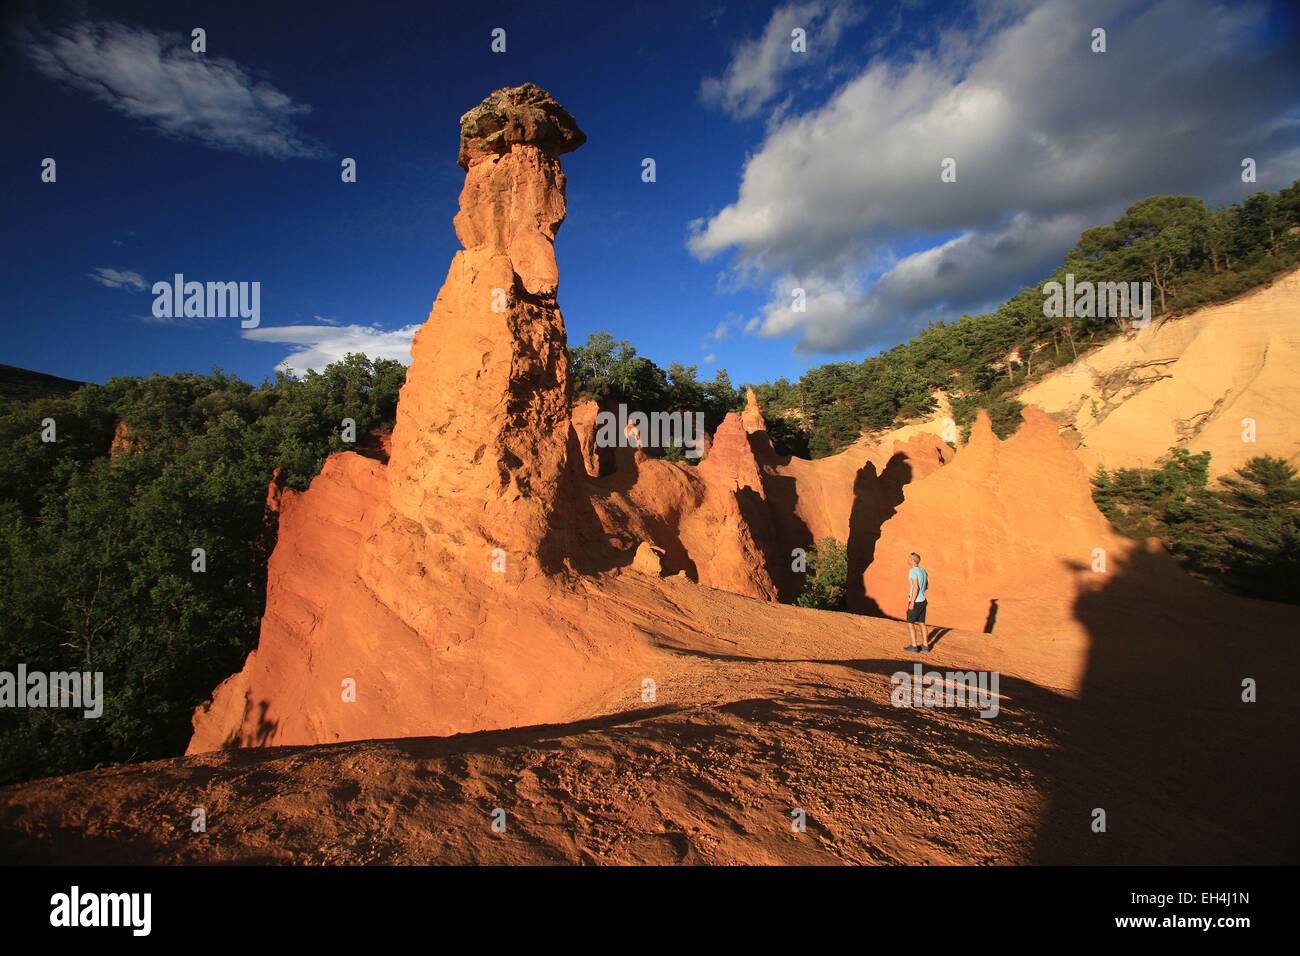 Francia, Vaucluse, Rustrel, turistico in cave di ocra, il Colorado provenzale nel Parc Naturel Regional du Luberon (Parco naturale regionale del Luberon) Foto Stock